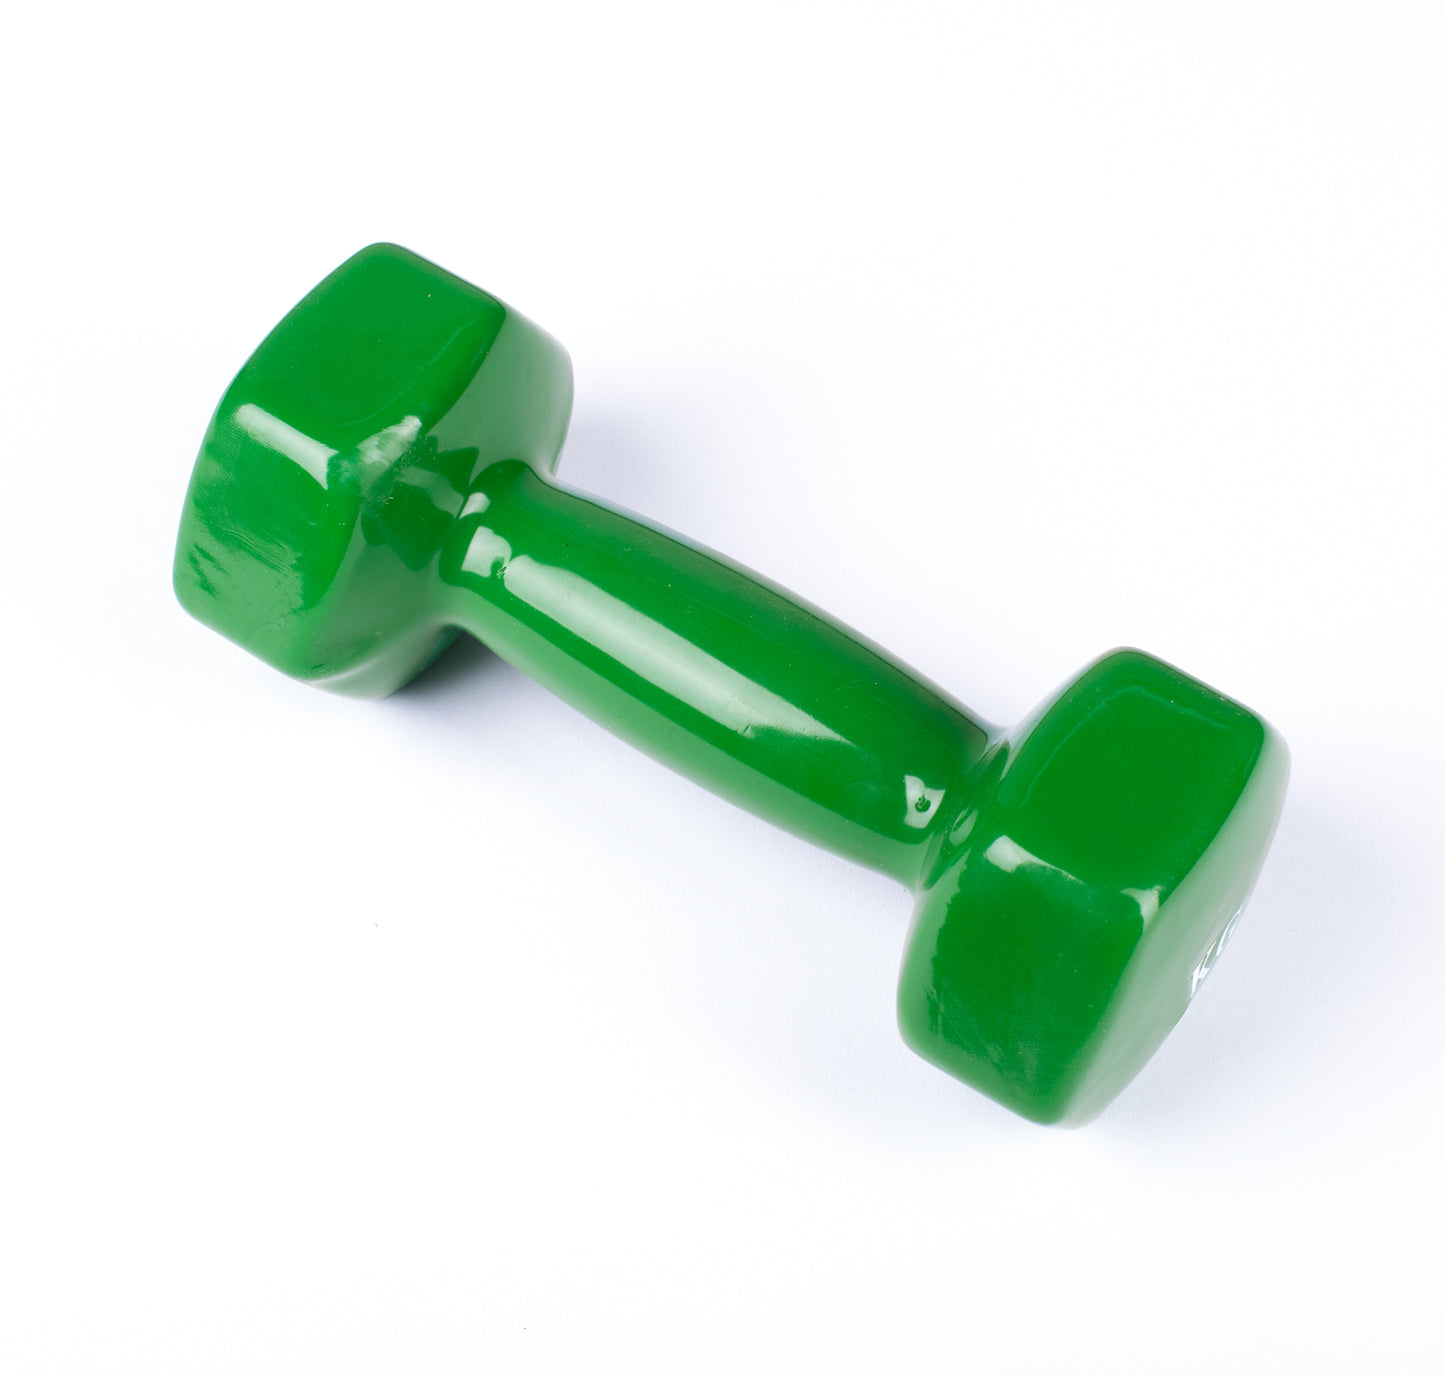 دامبل حديد للتمارين الرياضية بطبقة من الفينيل - لون اخضر - قطعة واحدة - وزن 5 كيلو - Kanteen - كانتين